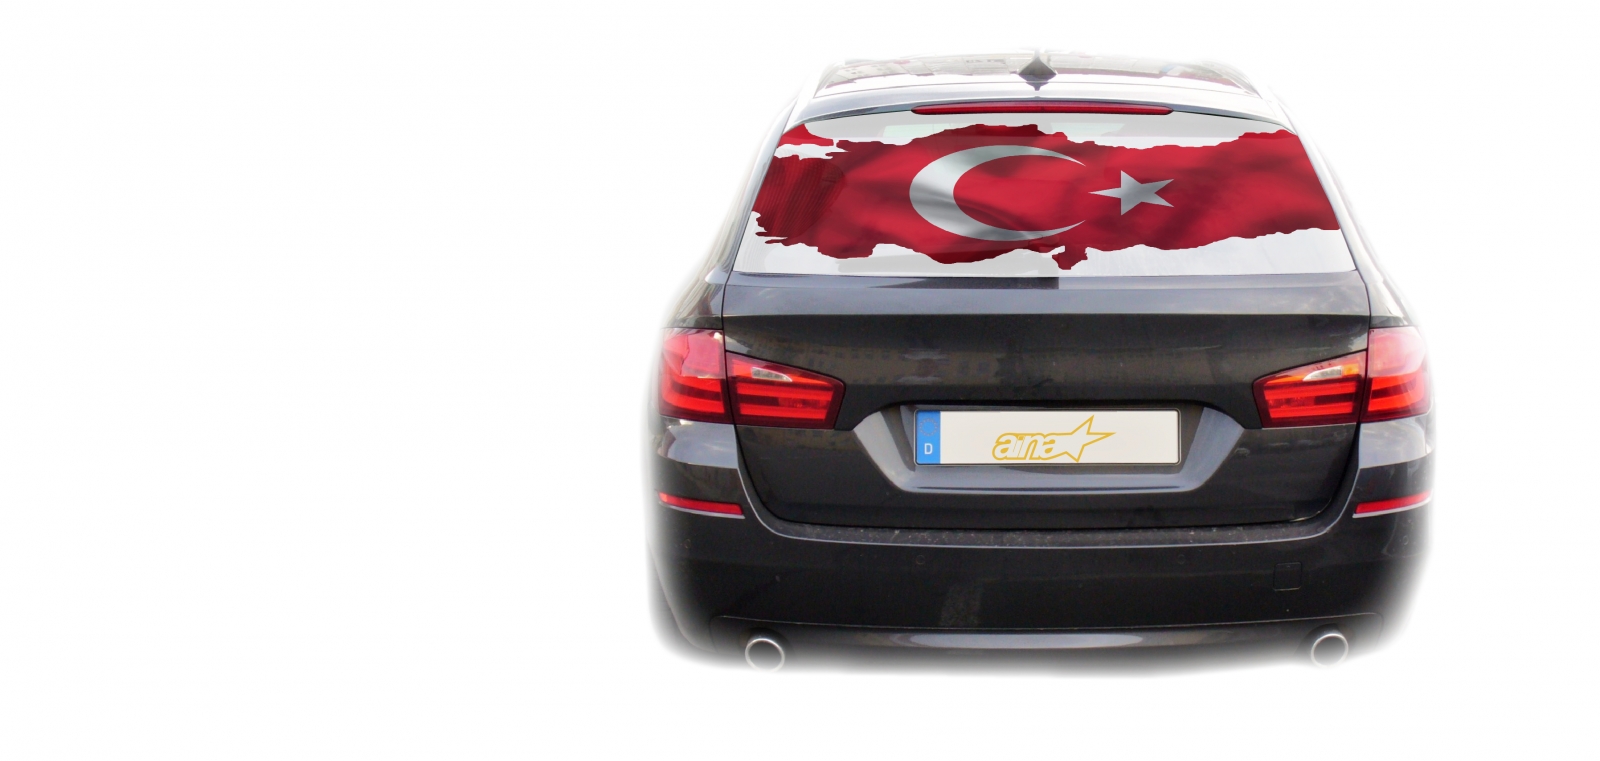 Sticker Türkei Fahne Aufkleber türkische Hiss Flagge Deko für Auto Fenster